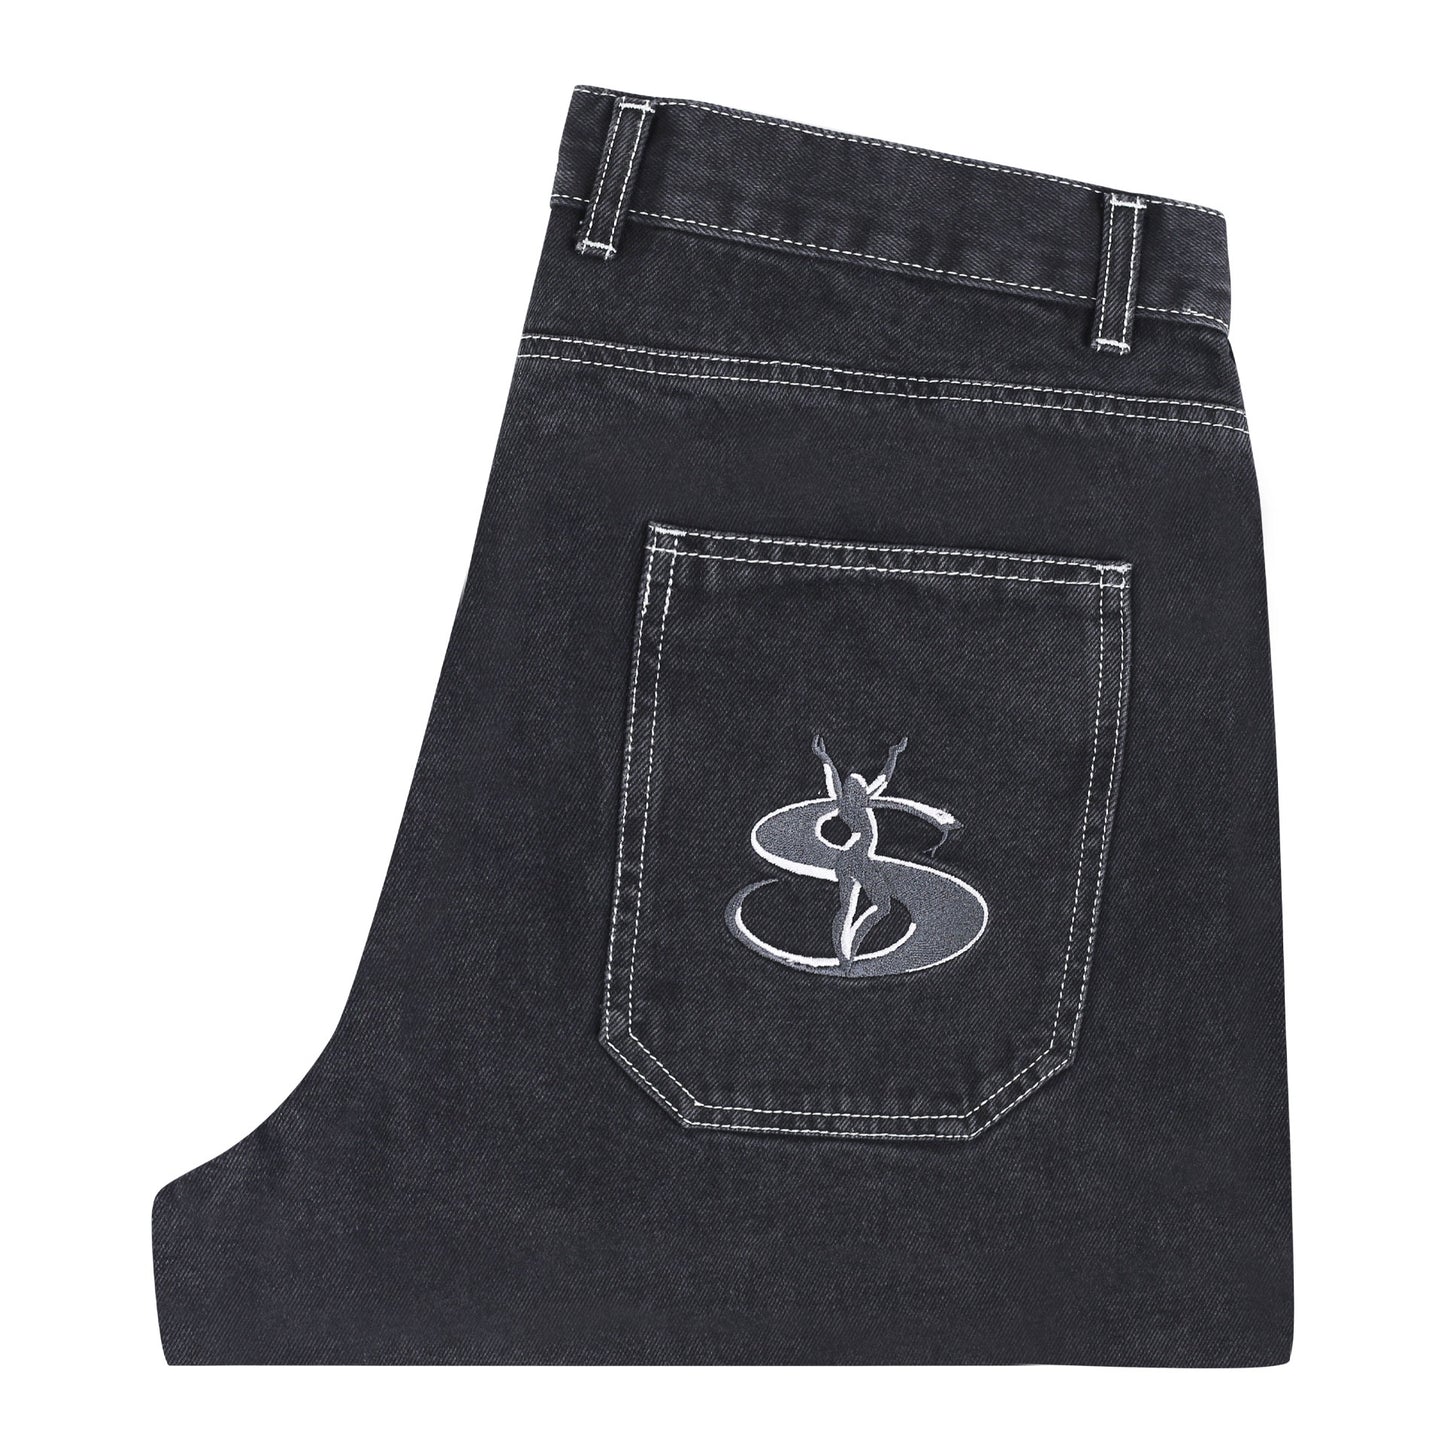 Yardsale Phantasy Jeans Washed Black |